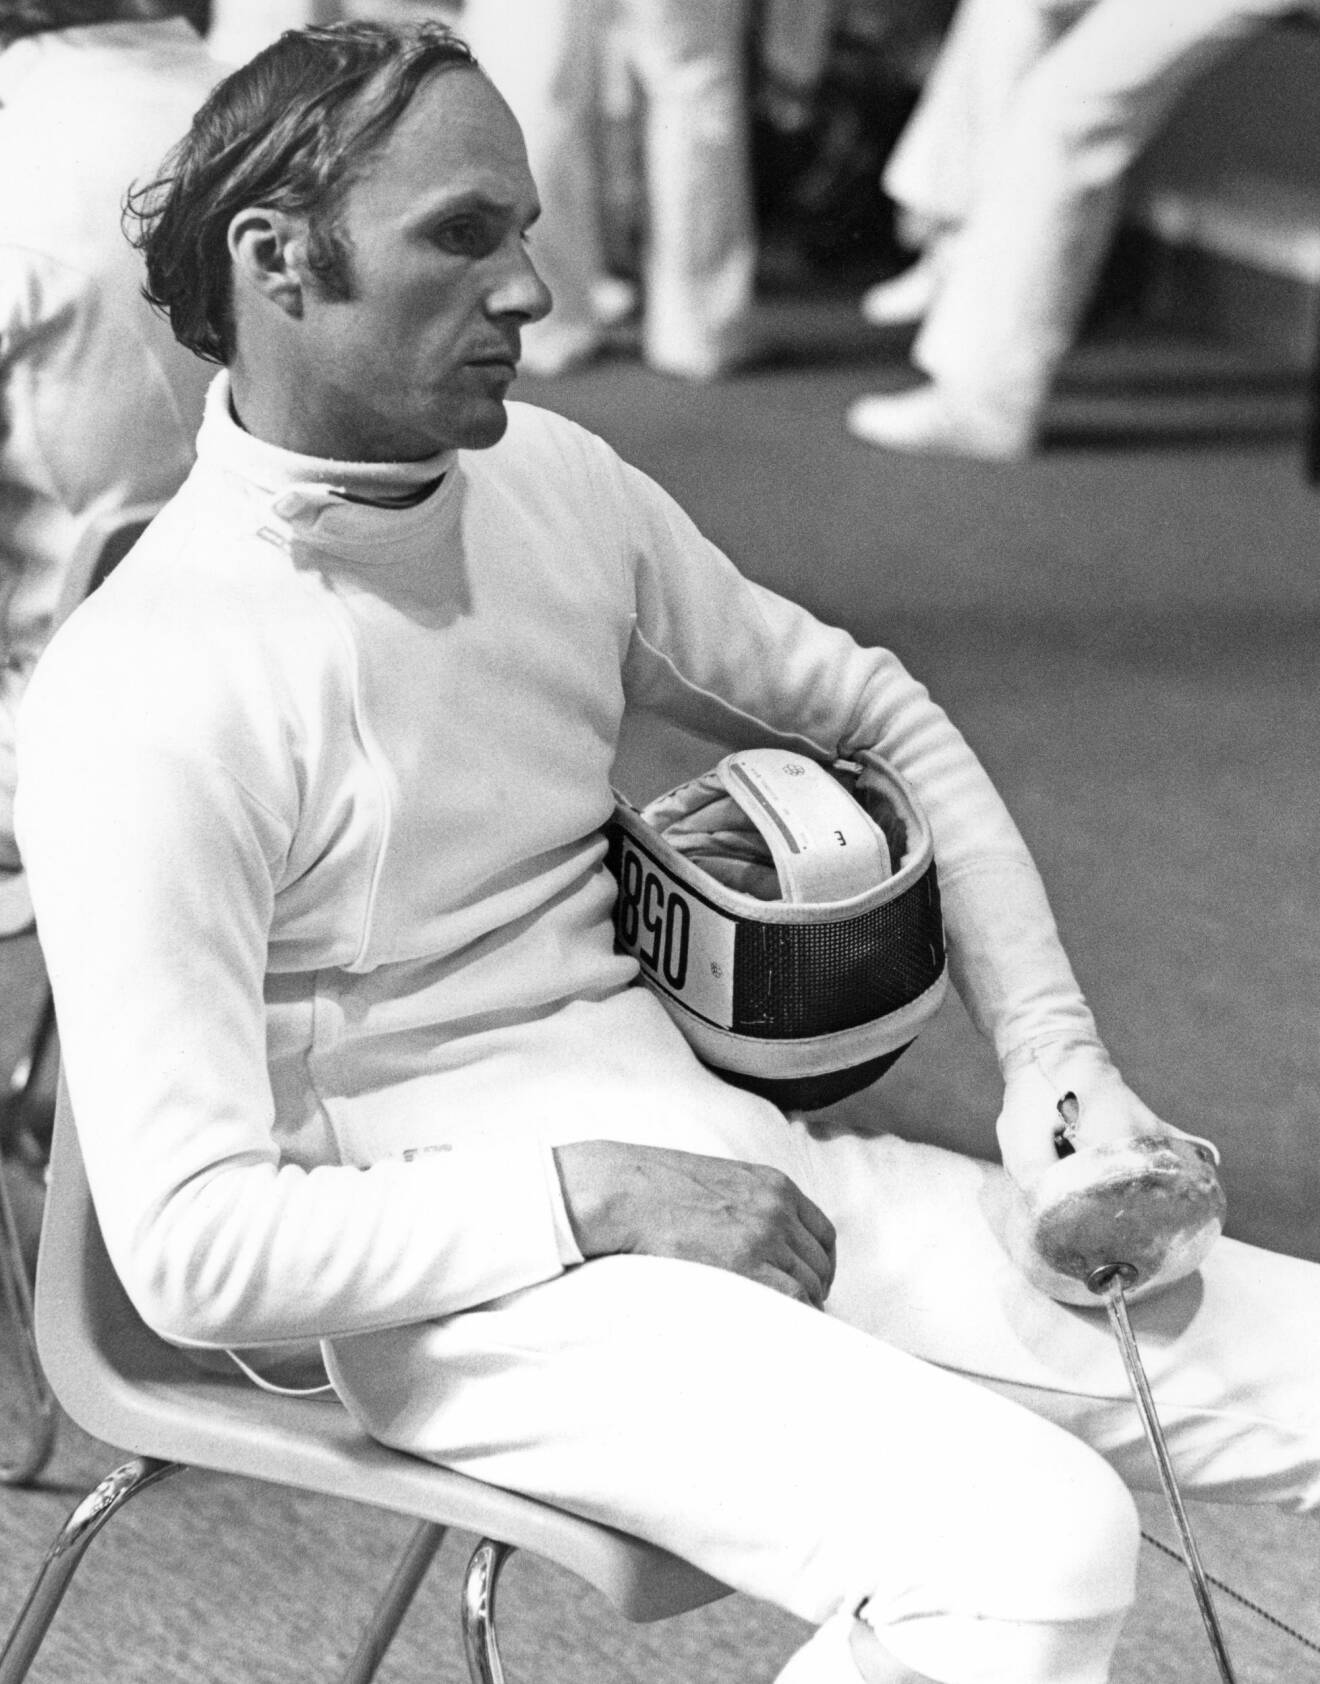 Ryske femkamparen Boris Onisjenko åkte dit för fusk under OS i Montreal 1976.